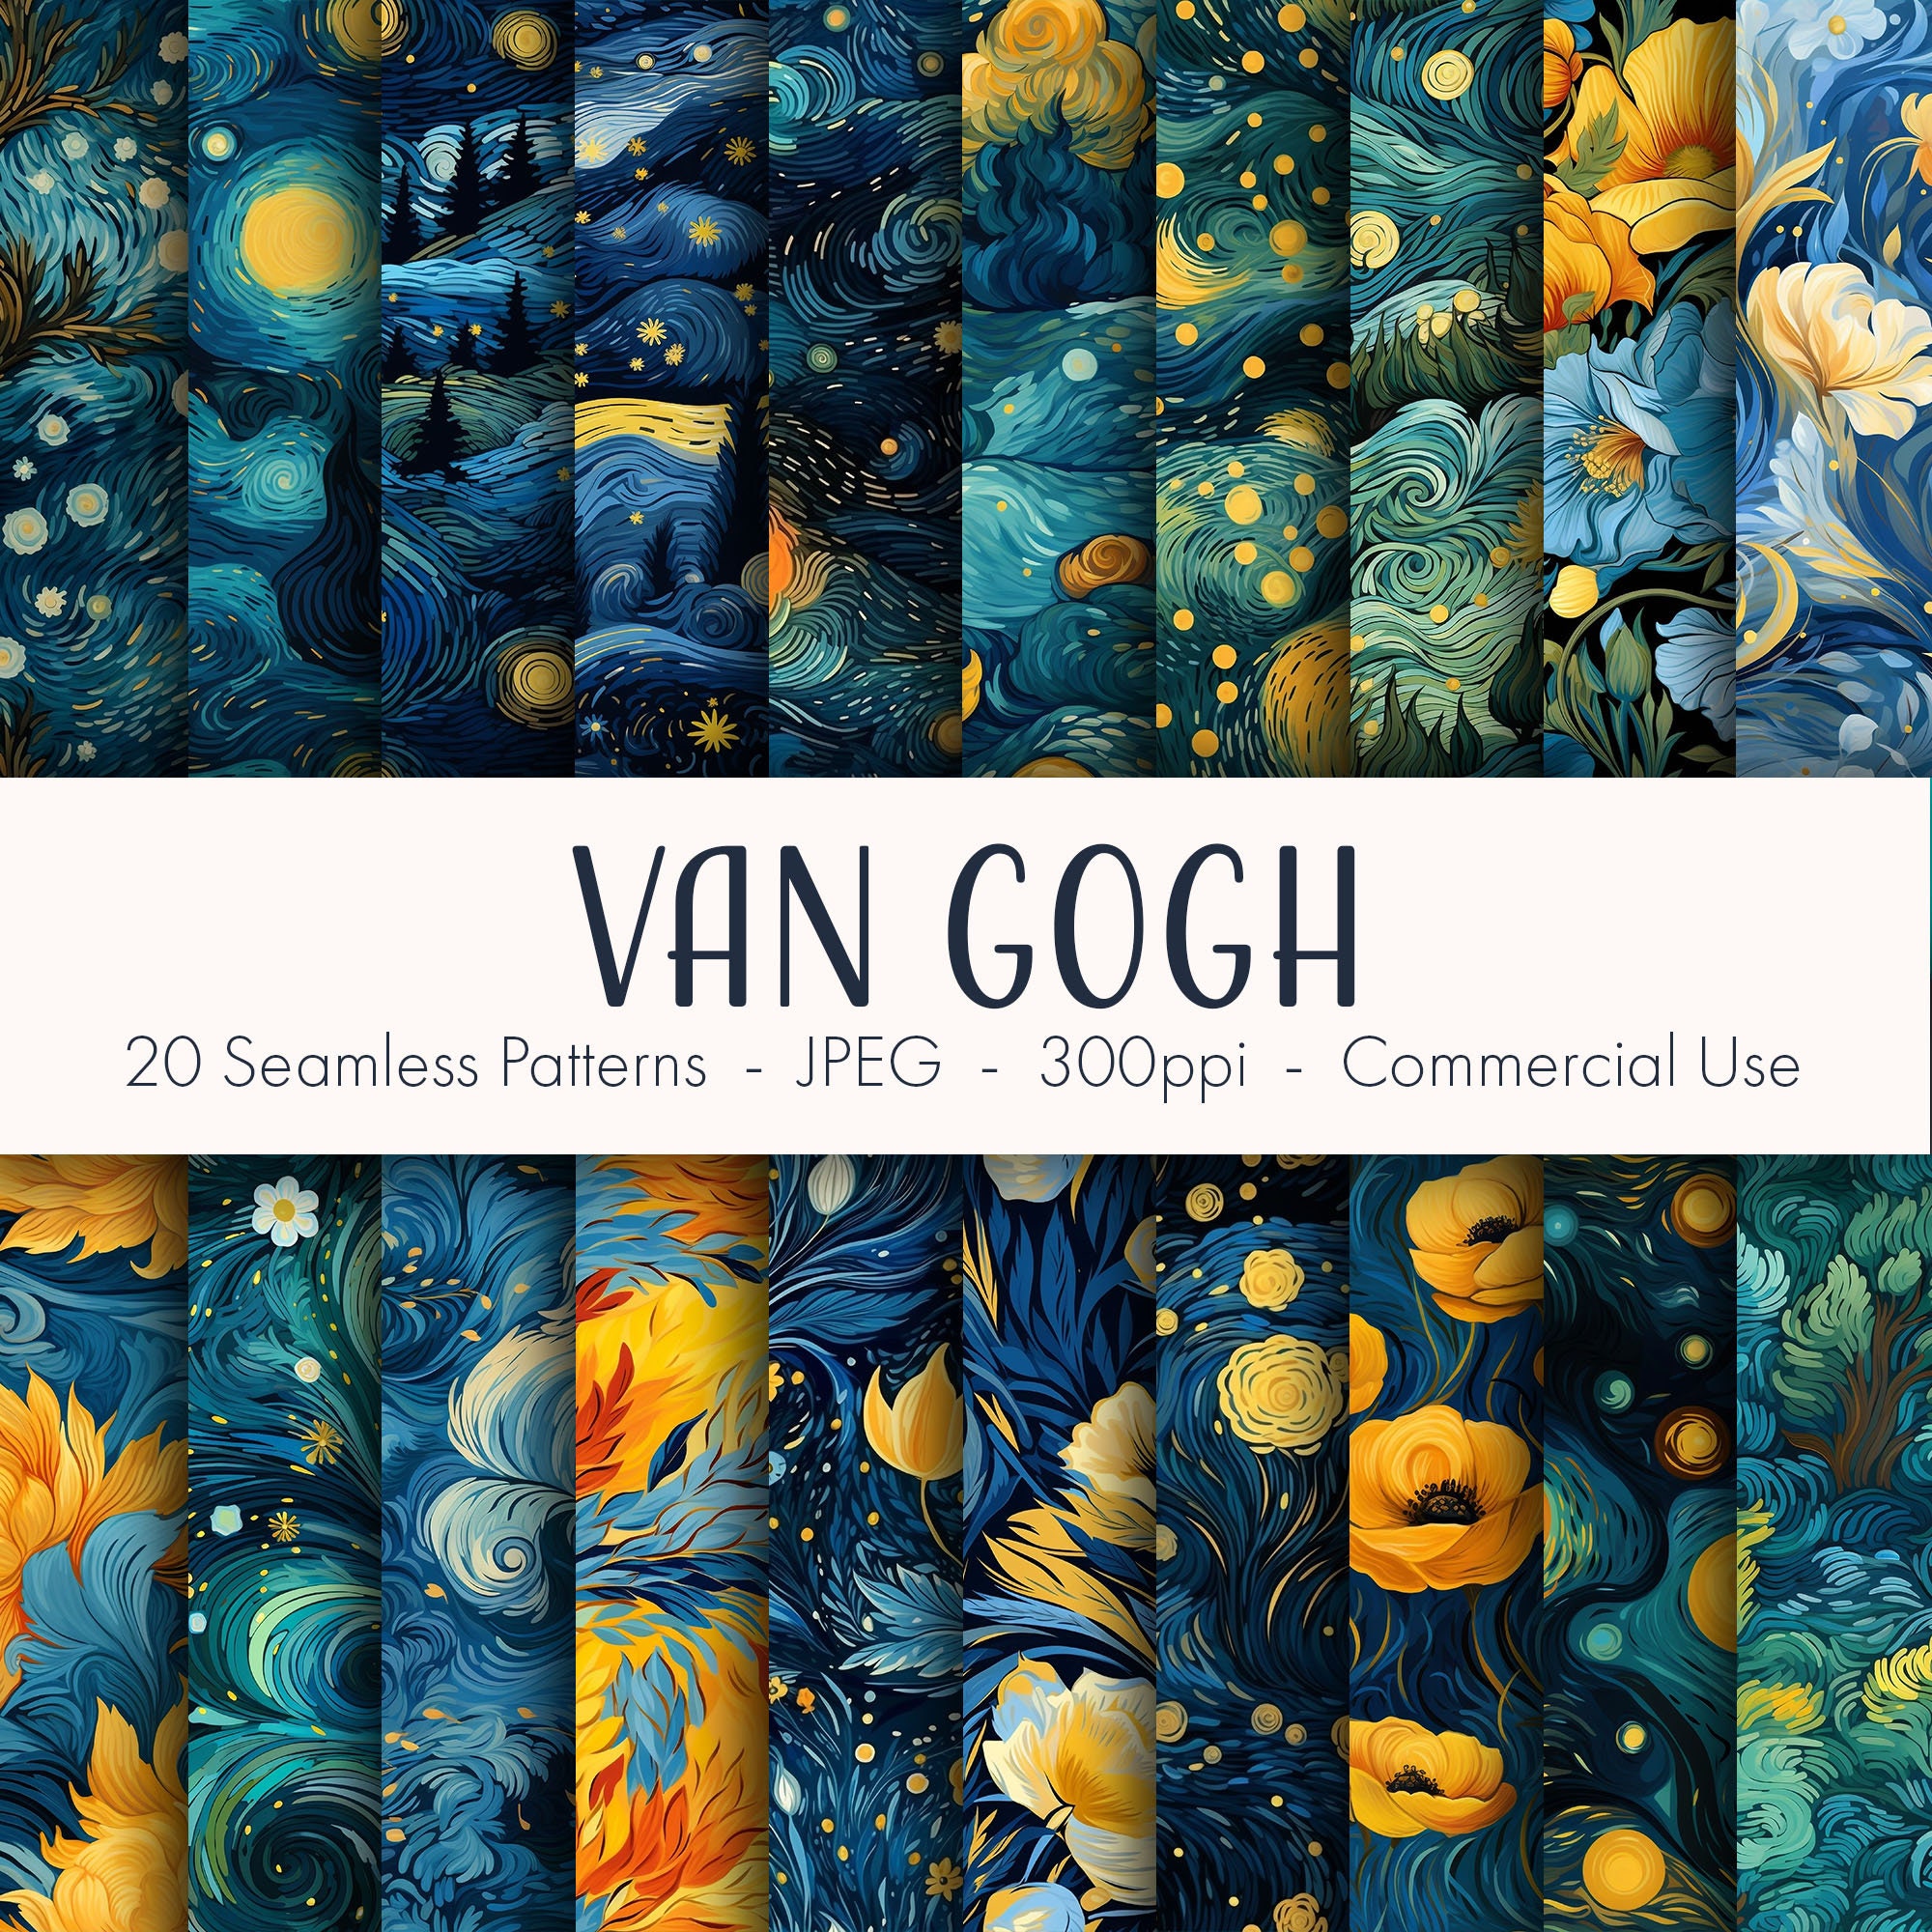 Love People” Art Palette Van Gogh Quote Sticker